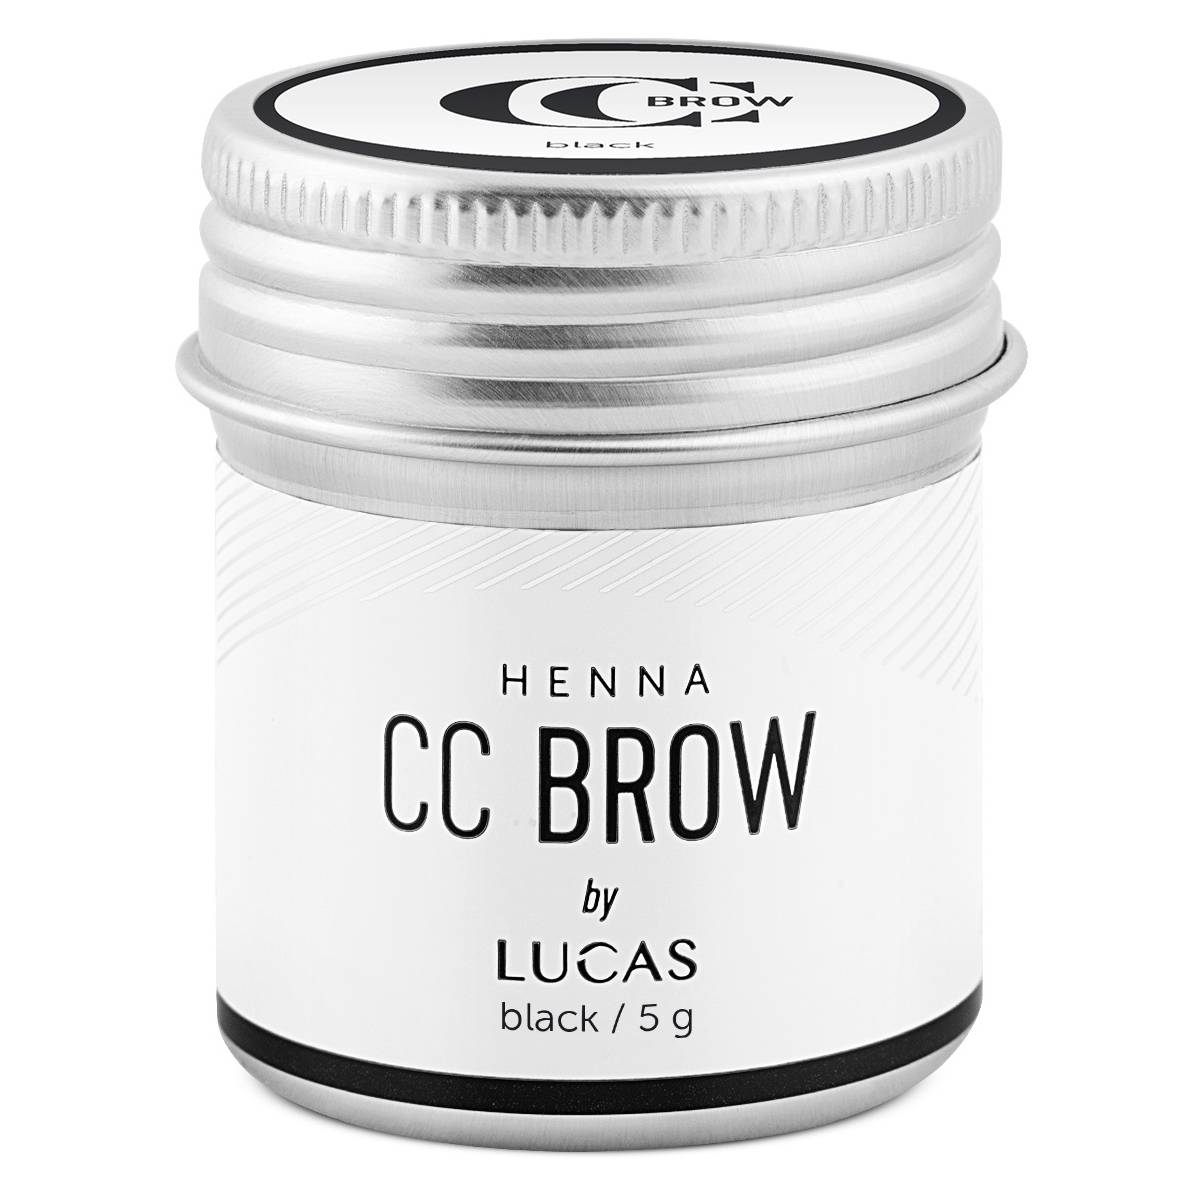 Lucas Cosmetics Хна для бровей Henna черная, 5 г (Lucas Cosmetics, CC Brow)